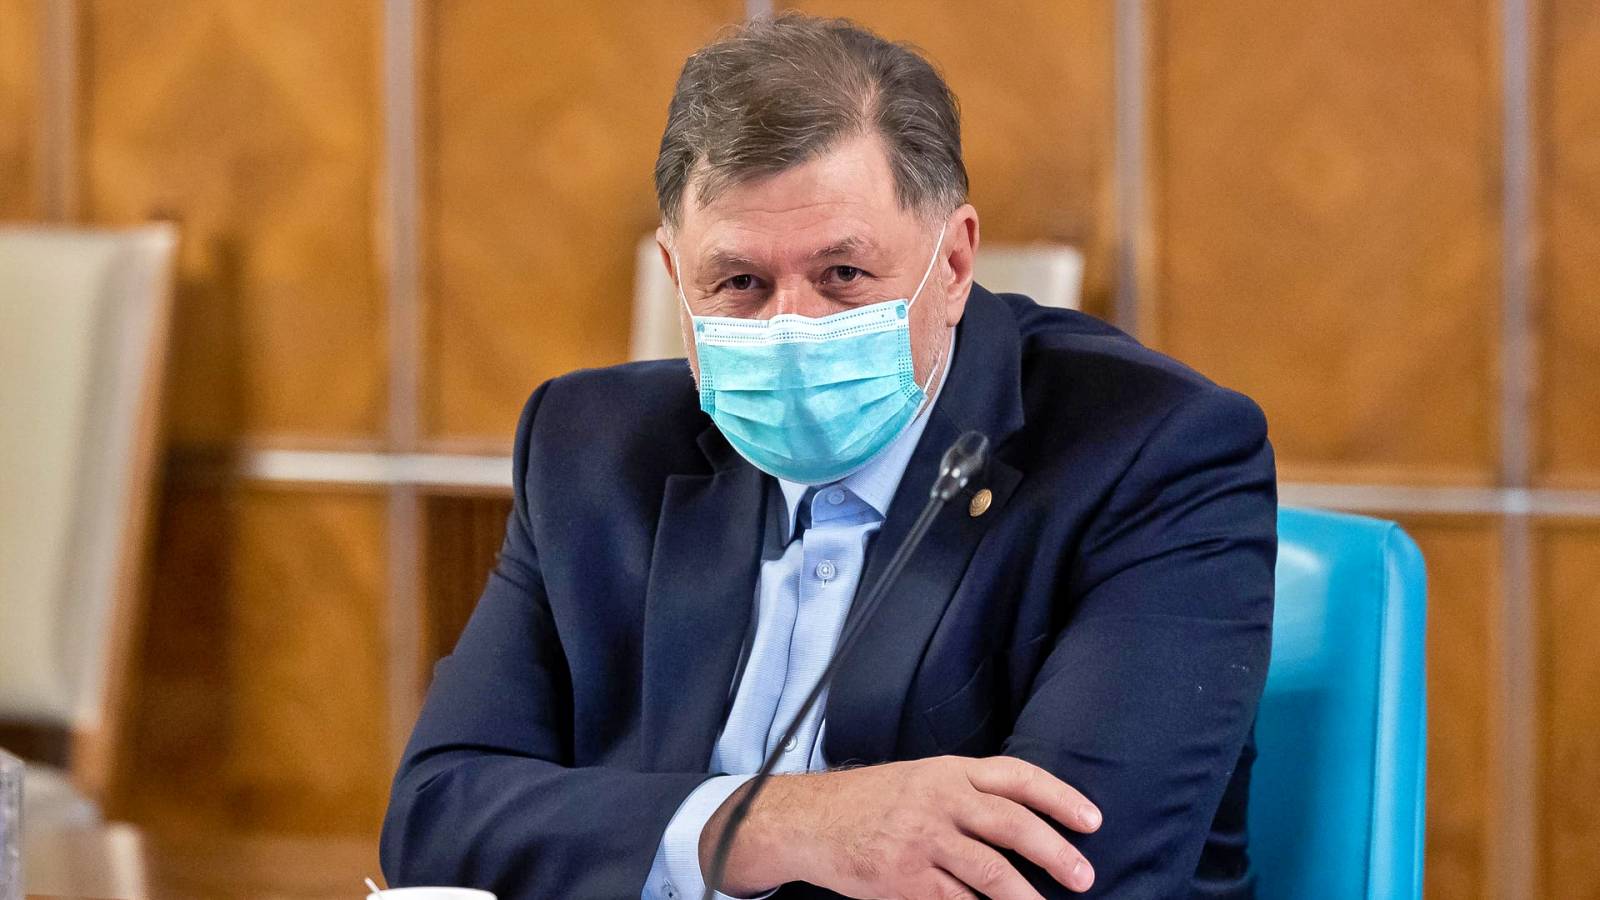 Der Gesundheitsminister hat in letzter Minute einen wichtigen Beschluss unterzeichnet, der Auswirkungen auf Rumänien hat